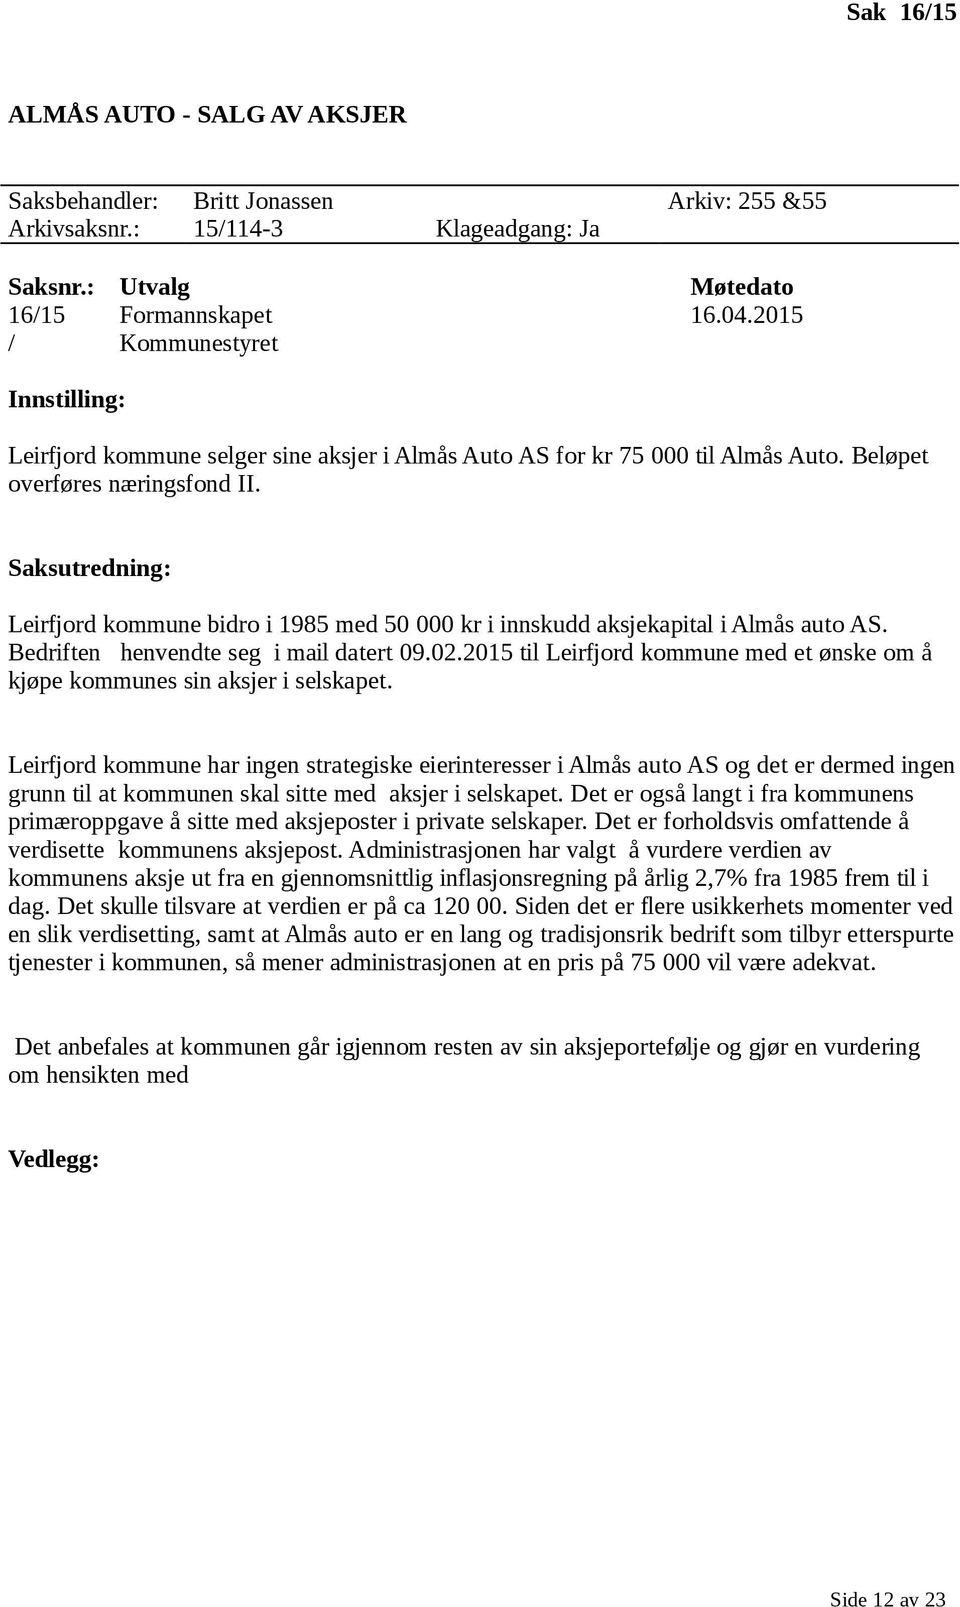 Leirfjord kommune bidro i 1985 med 50 000 kr i innskudd aksjekapital i Almås auto AS. Bedriften henvendte seg i mail datert 09.02.